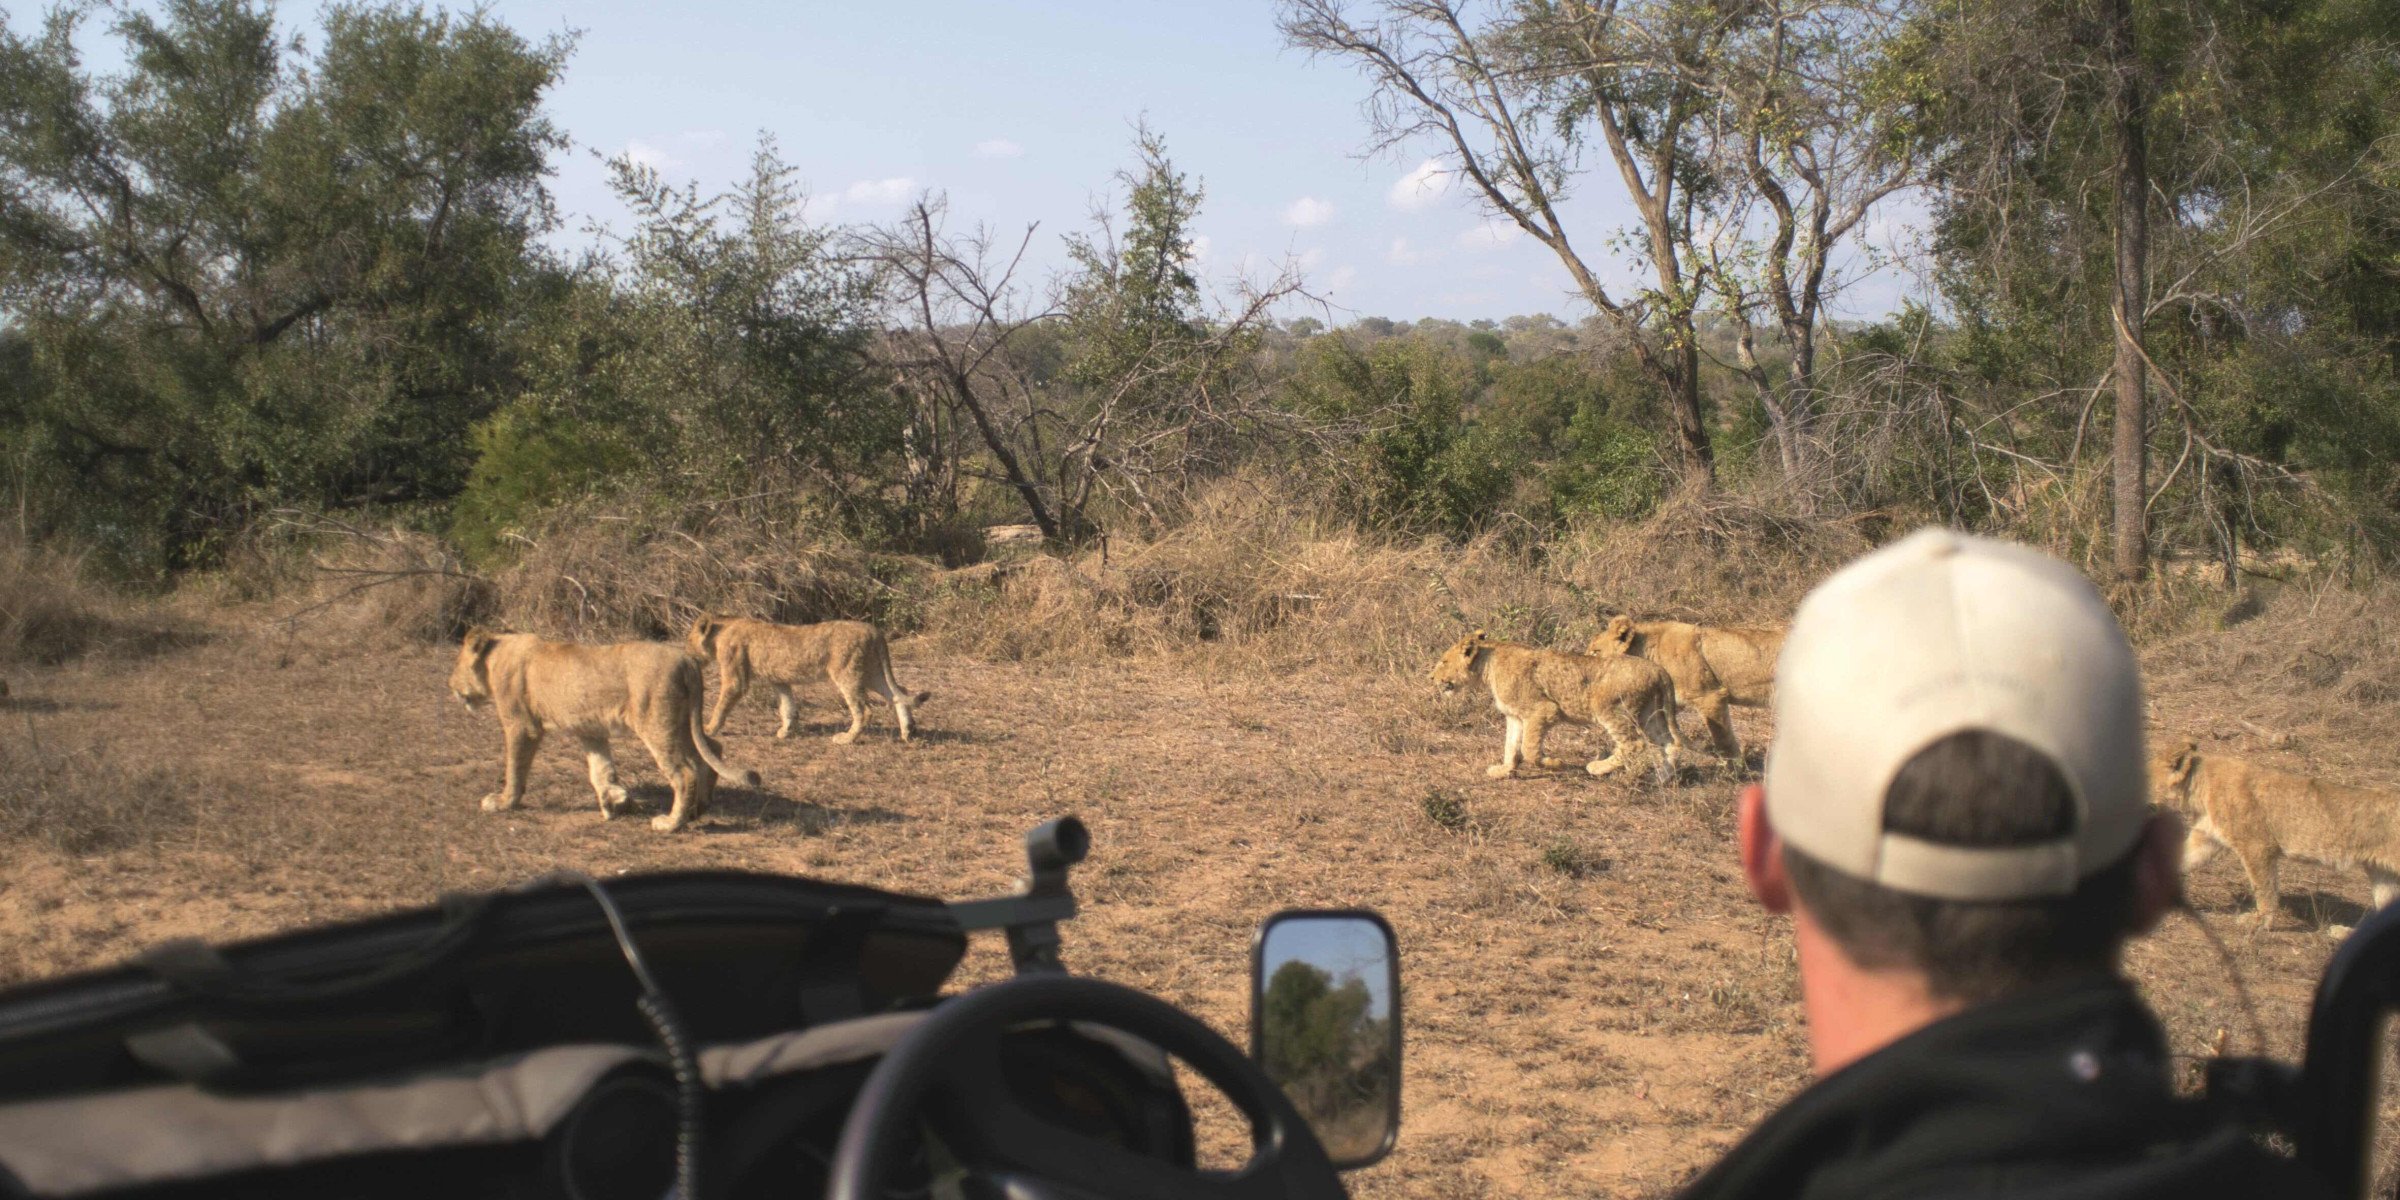 zuid-afrika-leeuwen-vanuit-auto